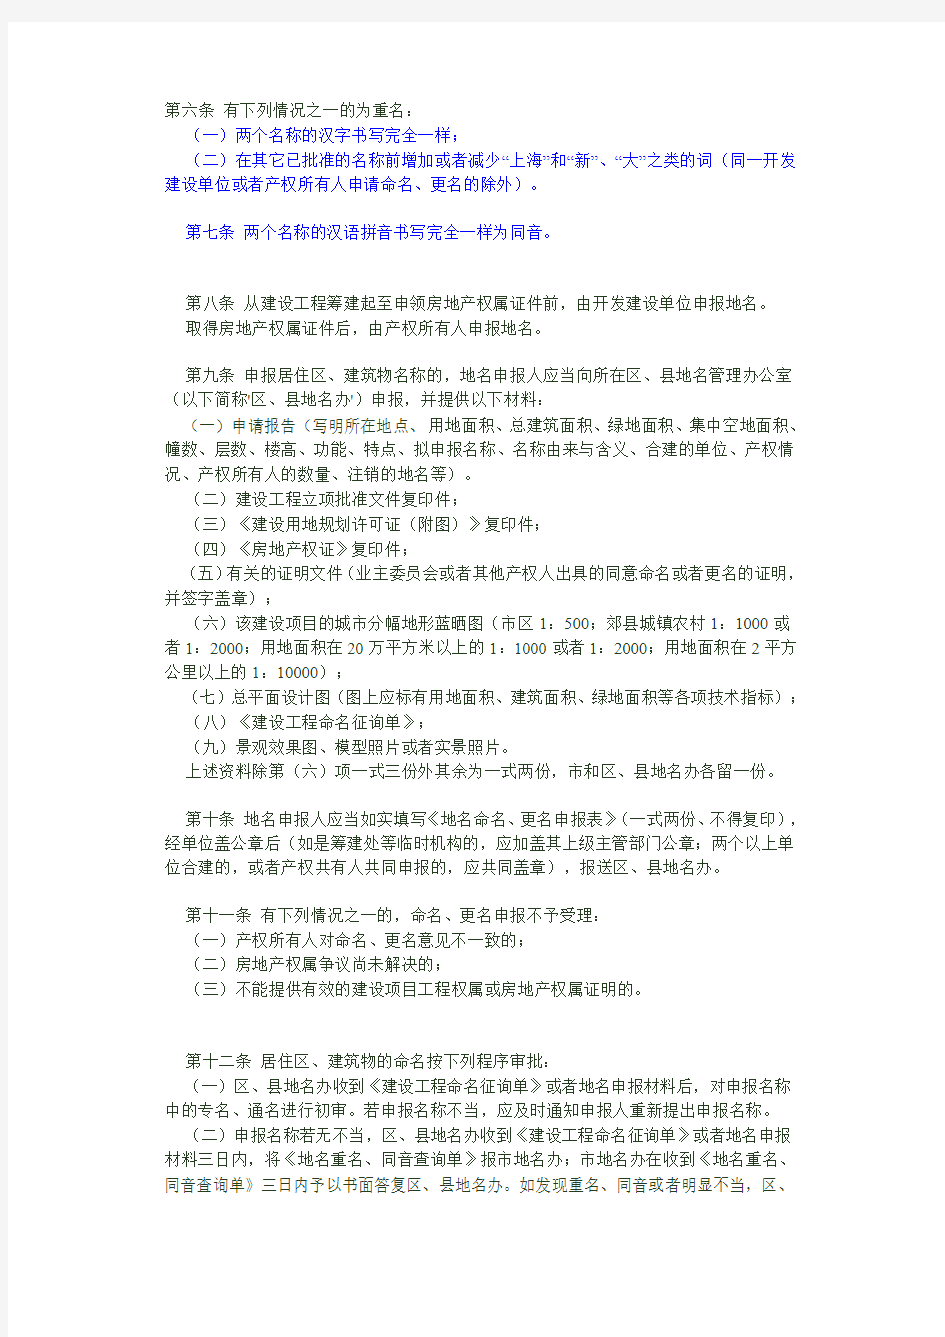 上海市居住区、建筑物名称管理规定